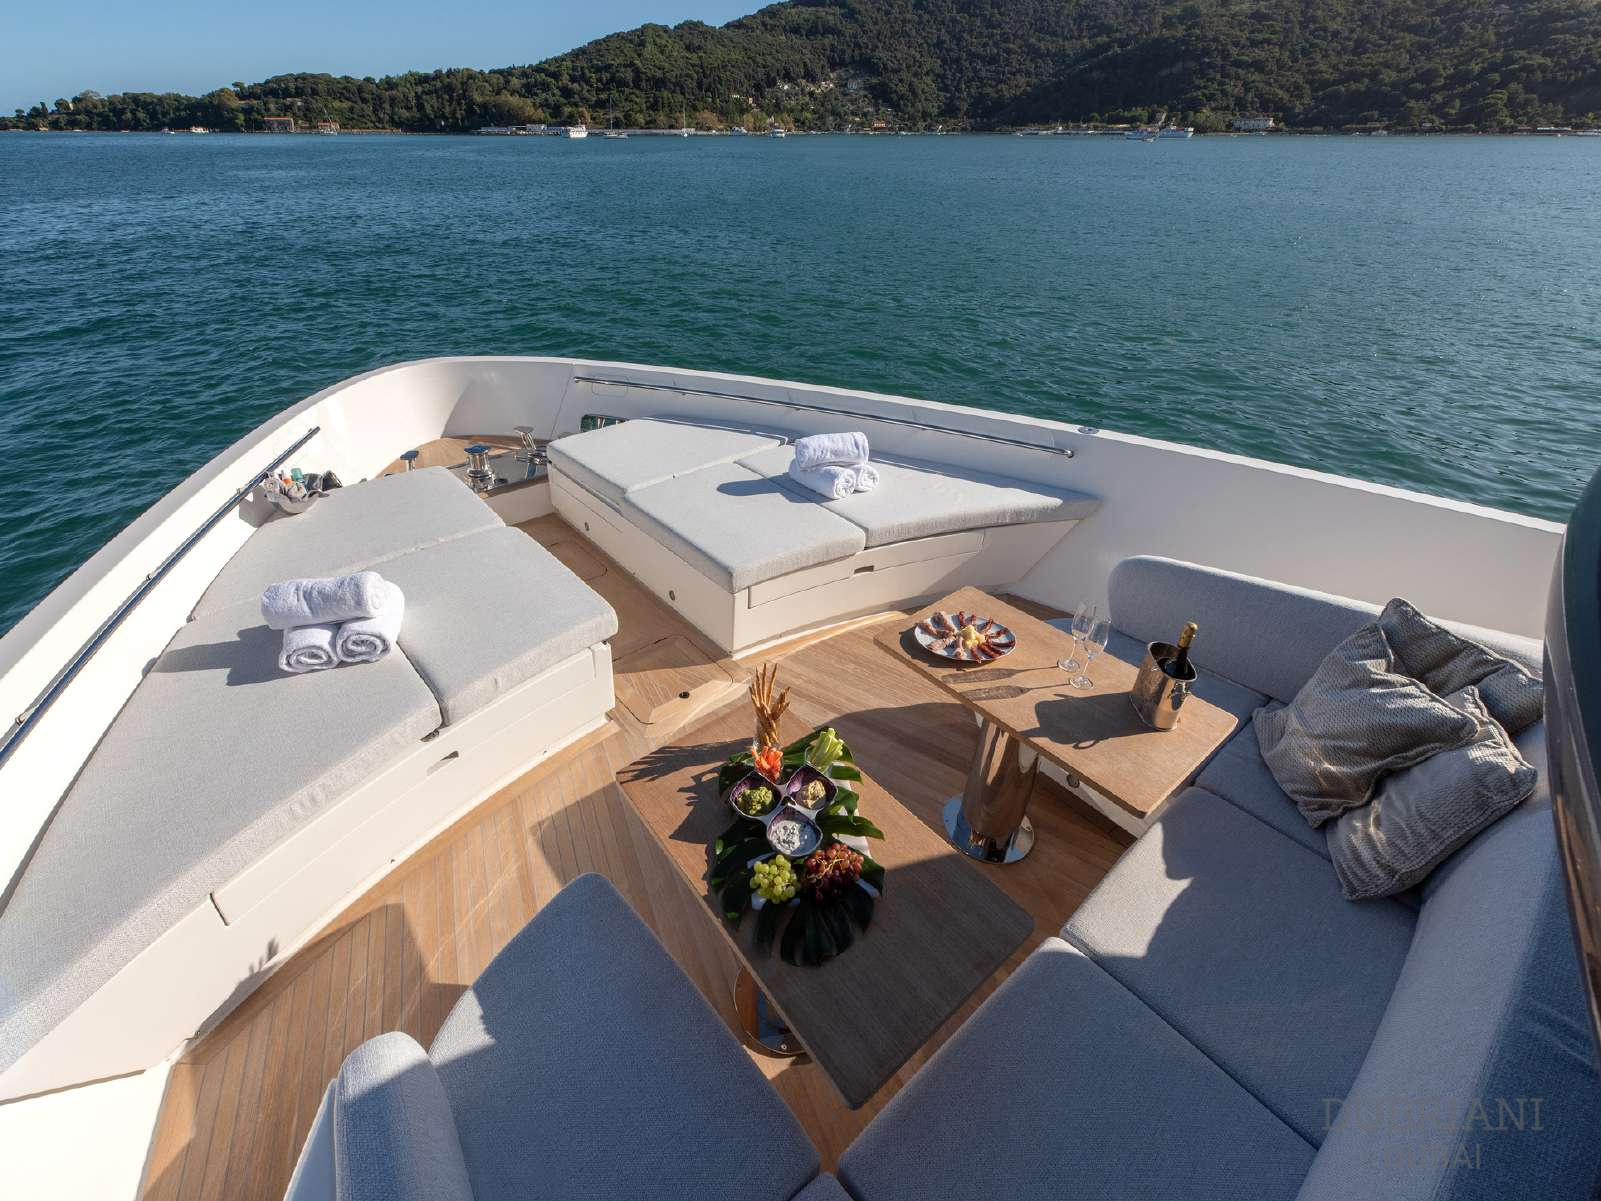 The sleek exterior of our San Lorenzo SX88 luxury yacht.